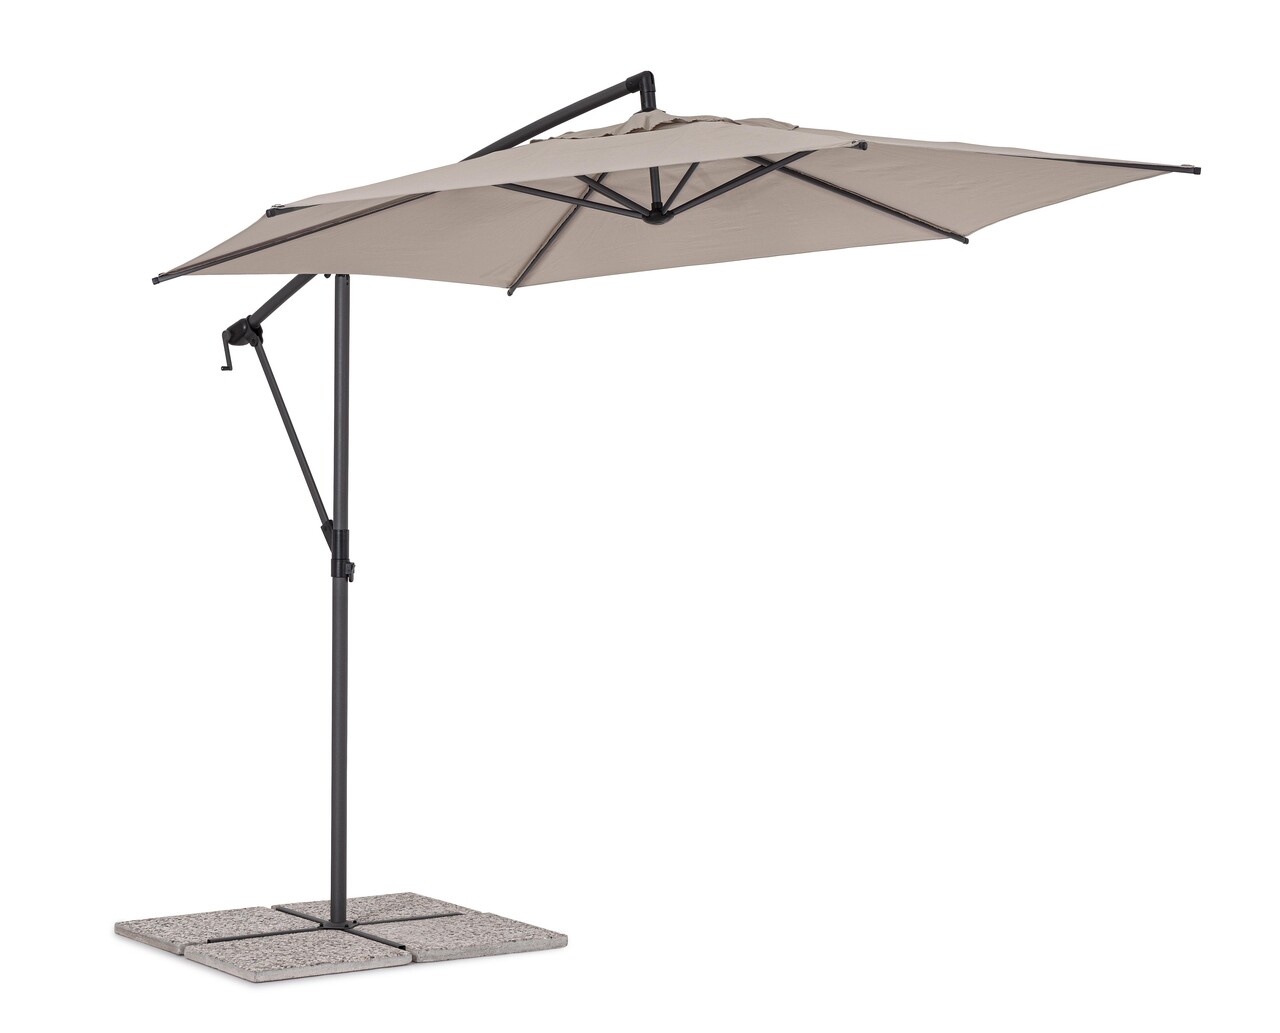 Tropea Terasz/kerti napernyő, Bizzotto, Ø 300 cm, oszlop Ø 46-48 mm, acél/poliészter, grézs